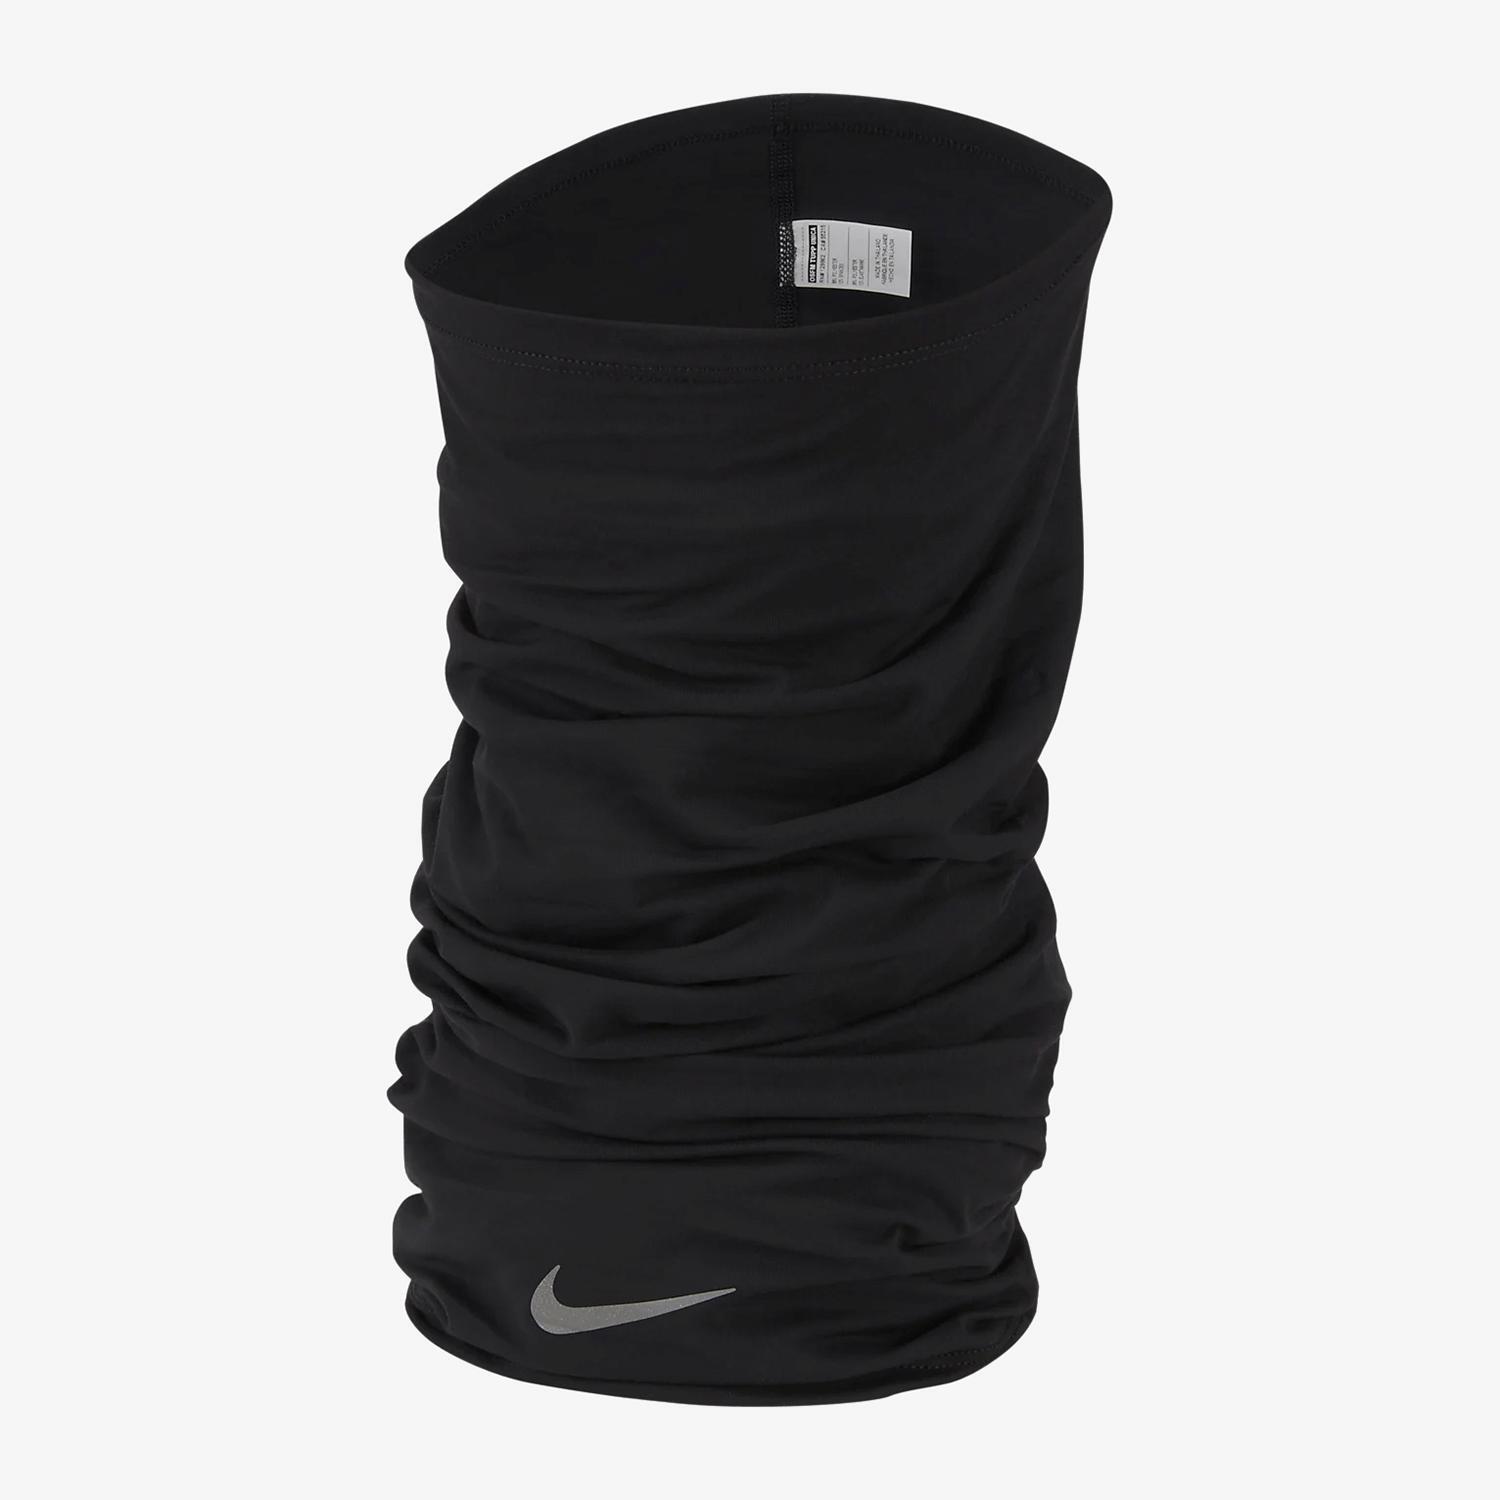 Nuevo Llaves Cuello Nike | Compra Online Super Baratos